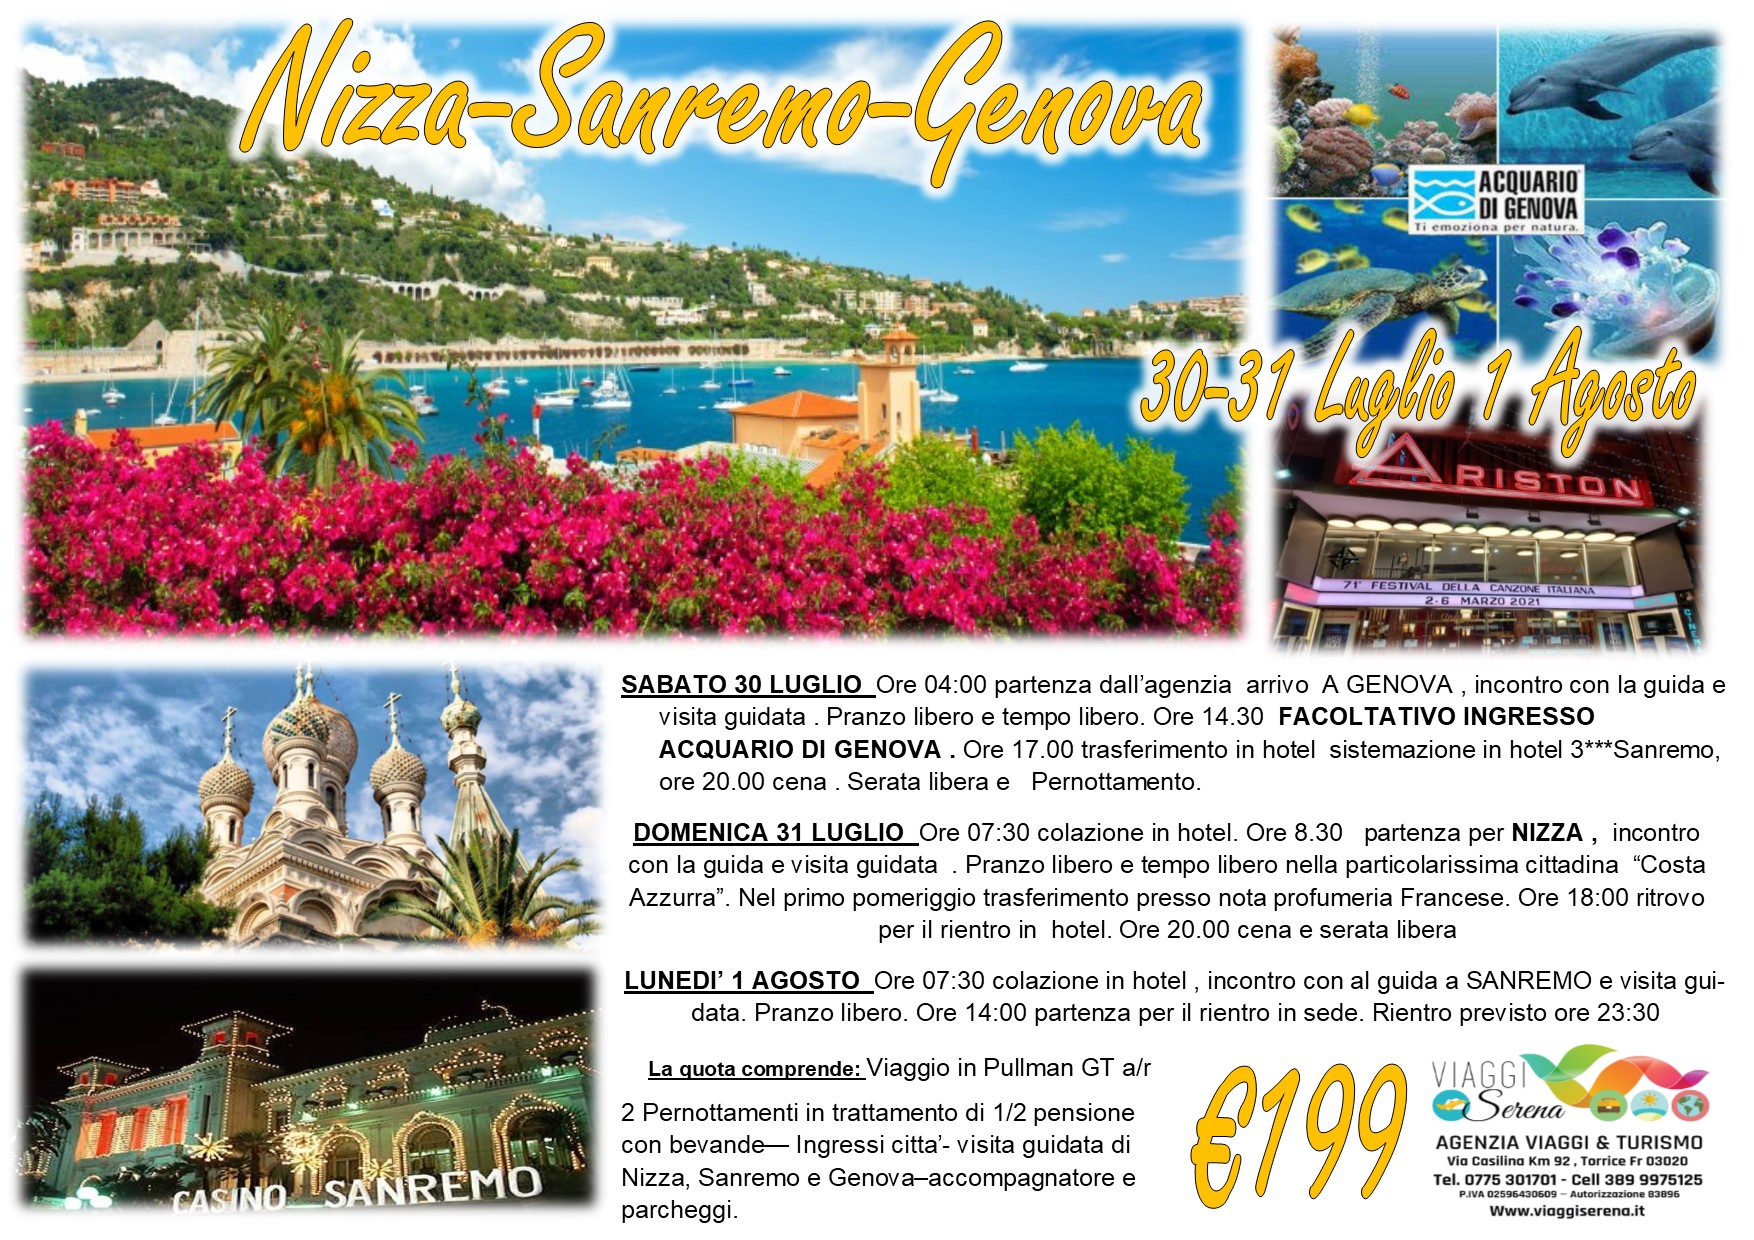 Viaggi di Gruppo: Nizza, Sanremo & Genova 30-31 Luglio 1 Agosto € 199,00